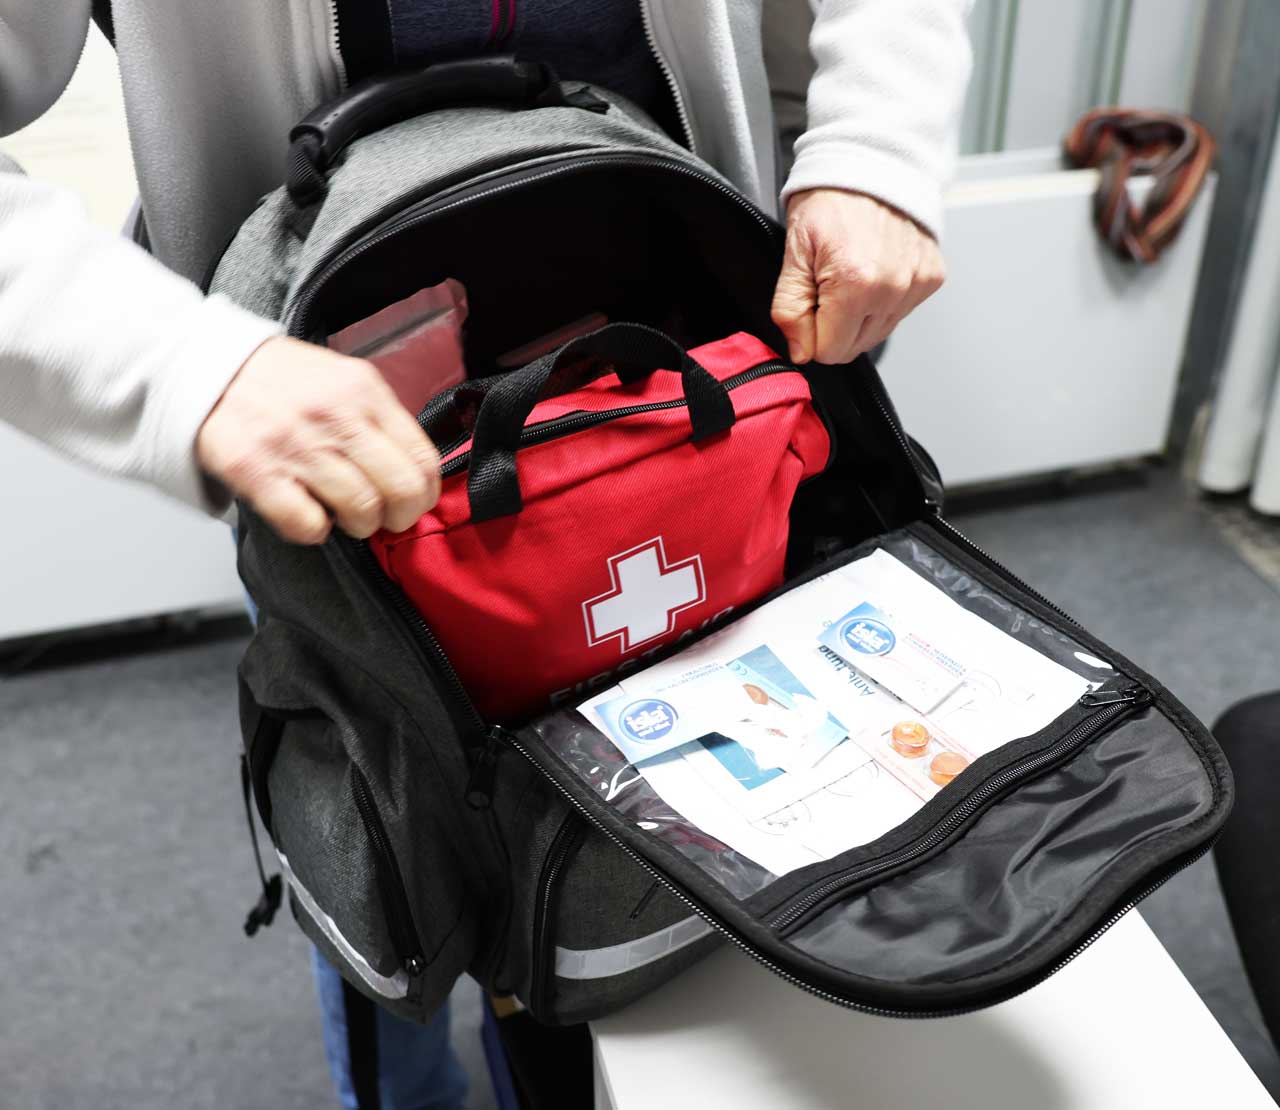 Geöffneter Rucksack, man sieht nur Hände und eine rote Erste-Hilfe-Tasche. 